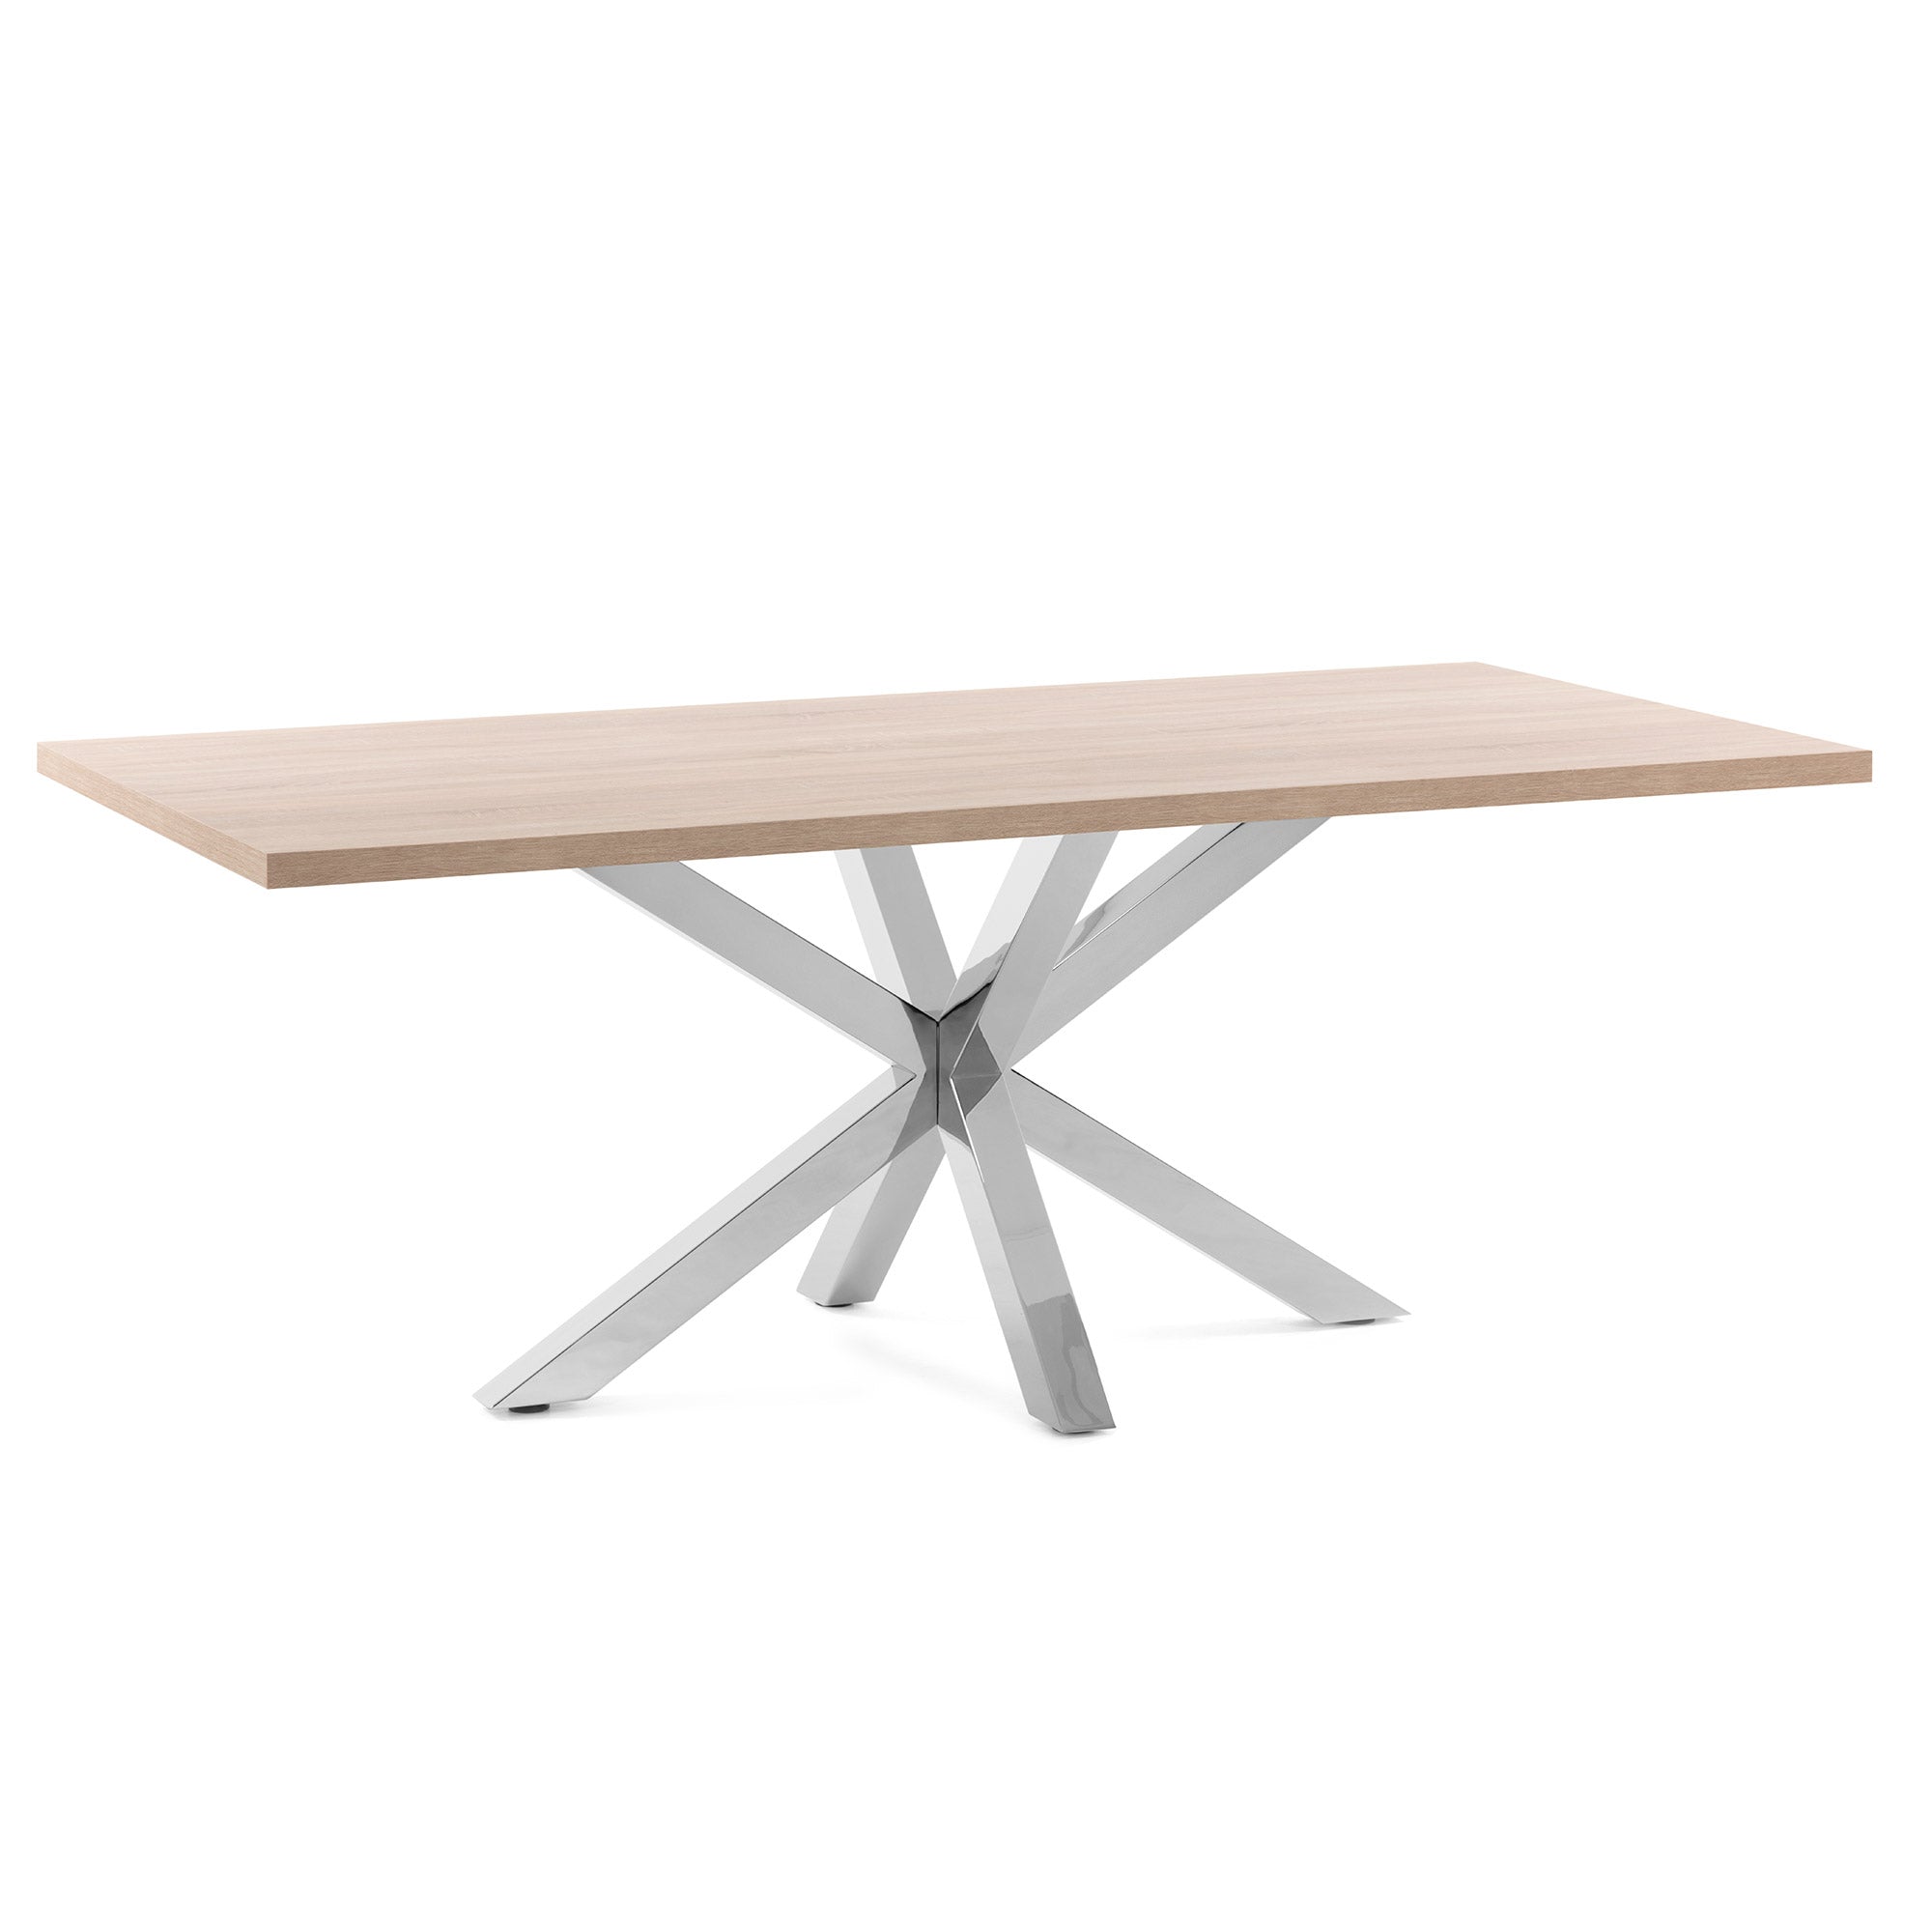 Argo table 200 cm natural melamine stainless steel legs